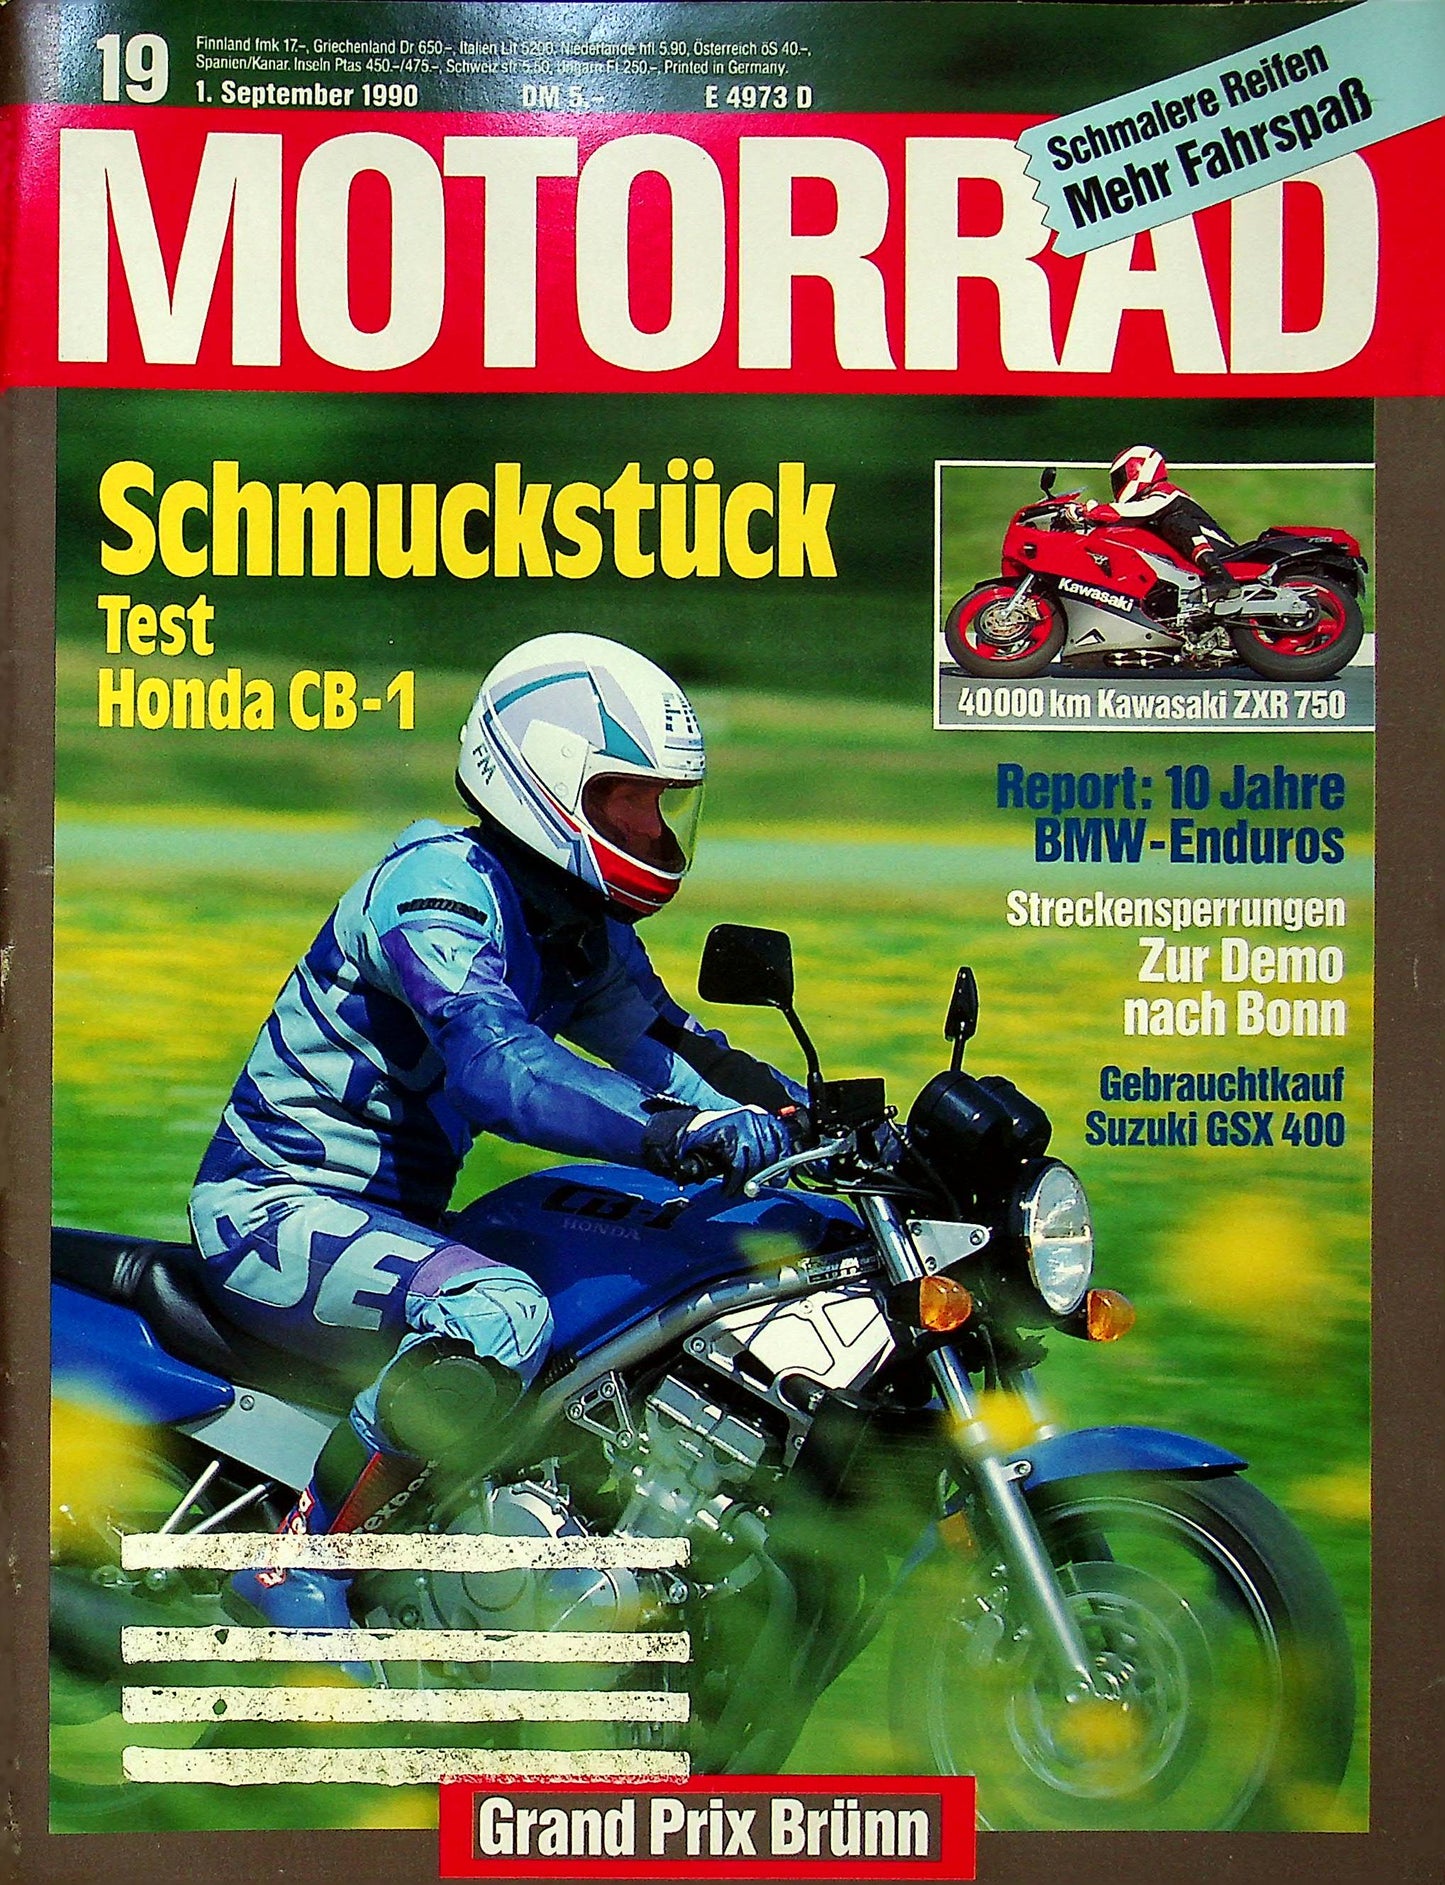 Motorrad 19/1990